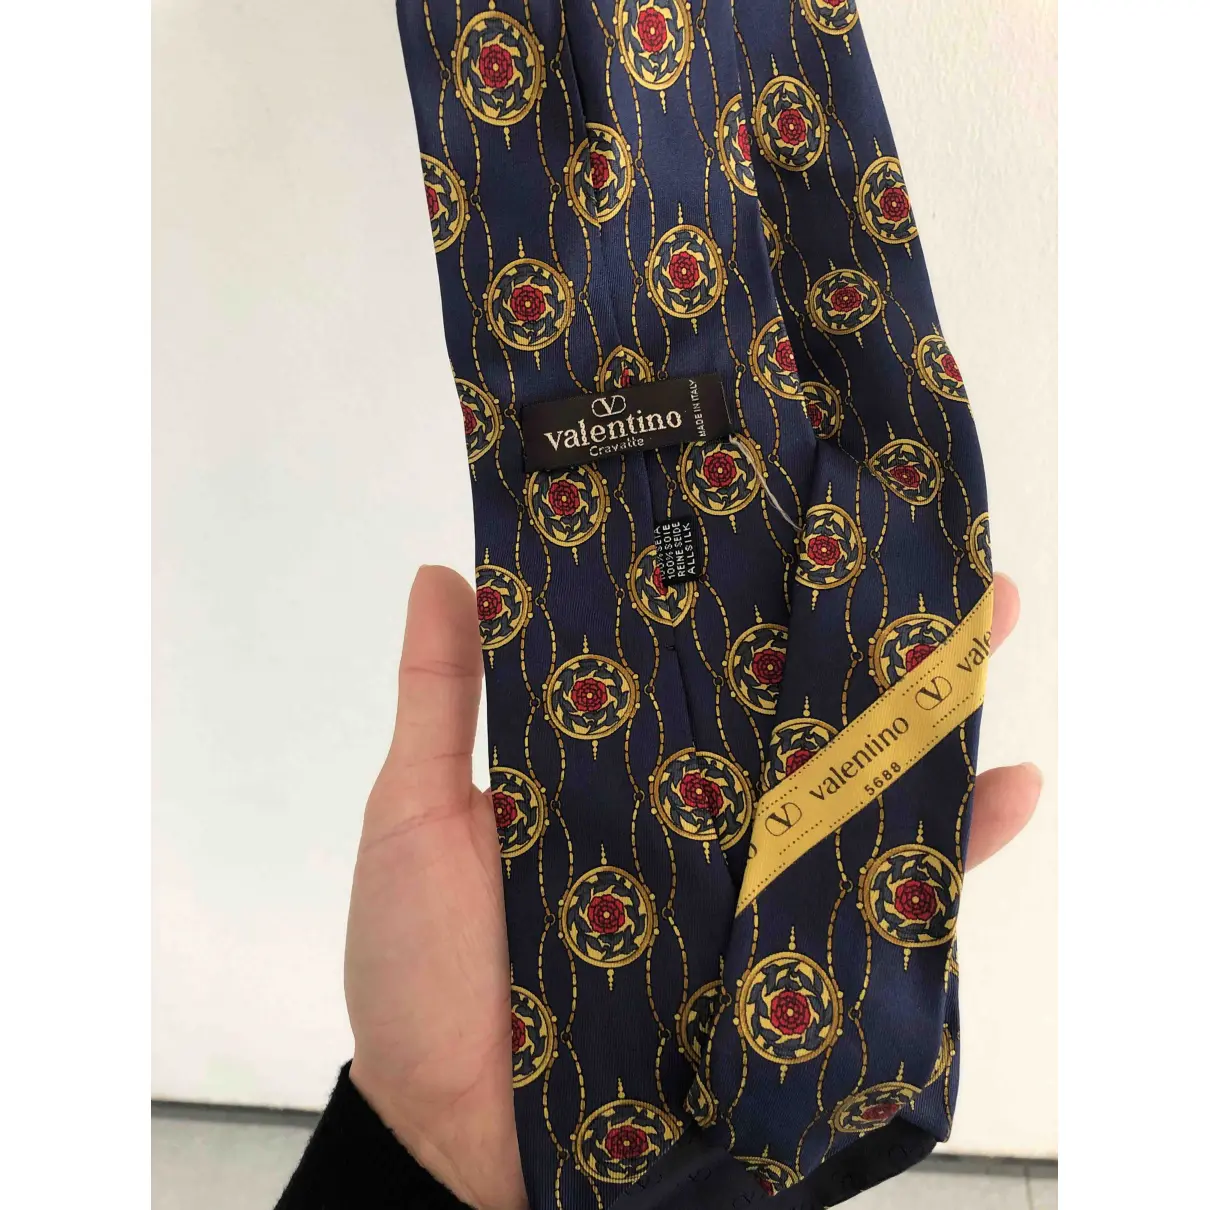 Buy Valentino Garavani Silk tie online - Vintage